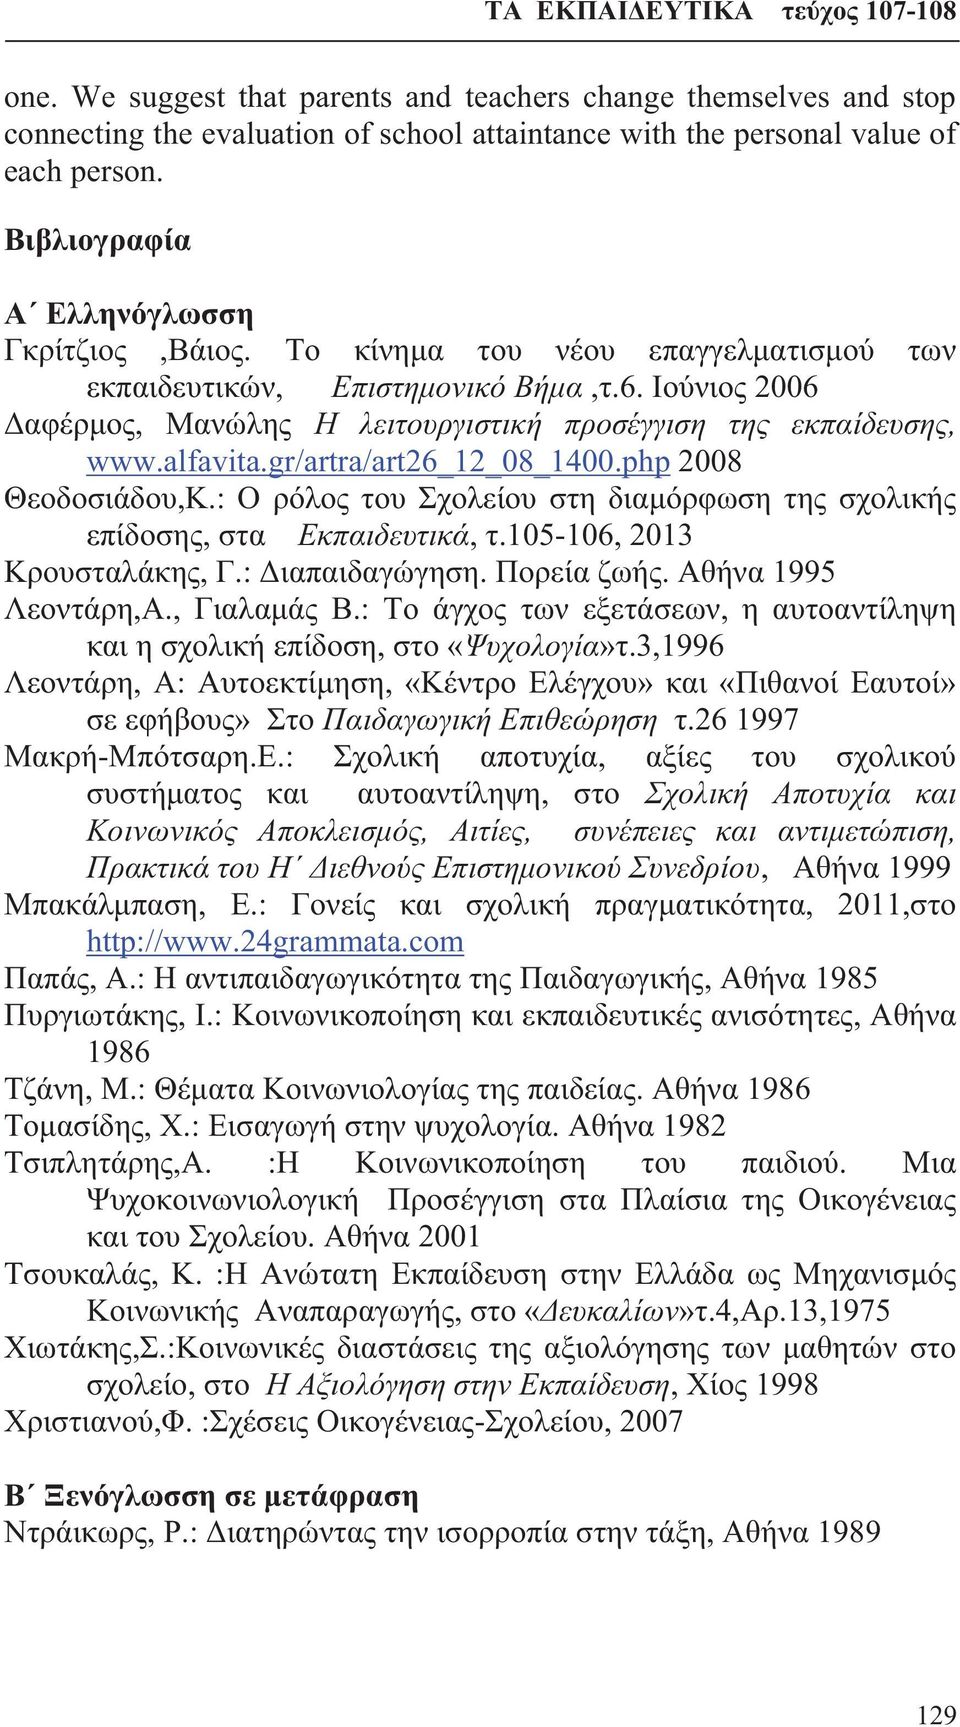 Ιούνιος 2006 Δαφέρμος, Μανώλης Η λειτουργιστική προσέγγιση της εκπαίδευσης, www.alfavita.gr/artra/art26_12_08_1400.php 2008 Θεοδοσιάδου,Κ.